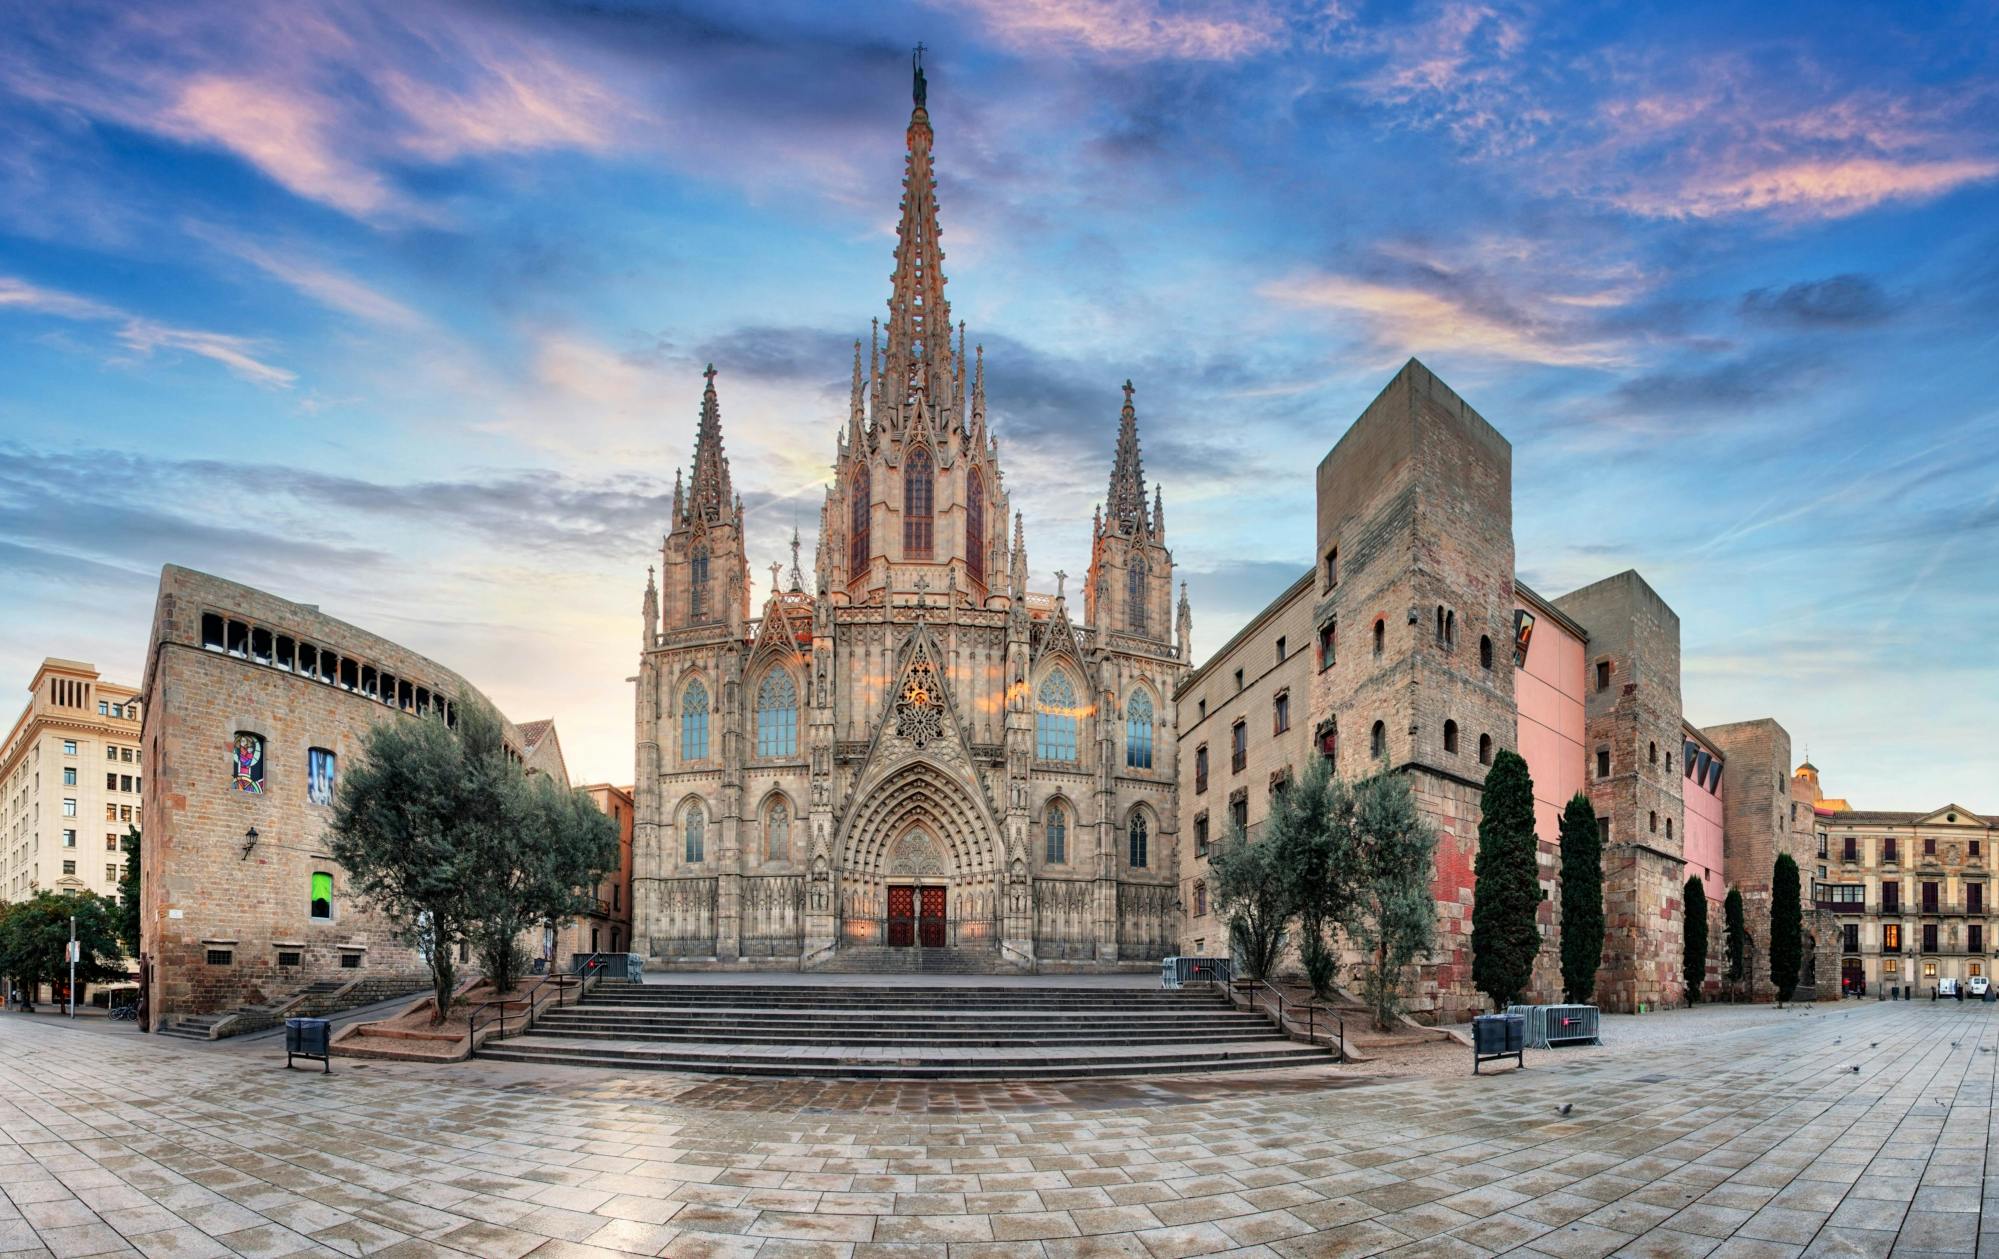 Toegangsticket voor de kathedraal van Barcelona met gratis audiorondleiding door de stad